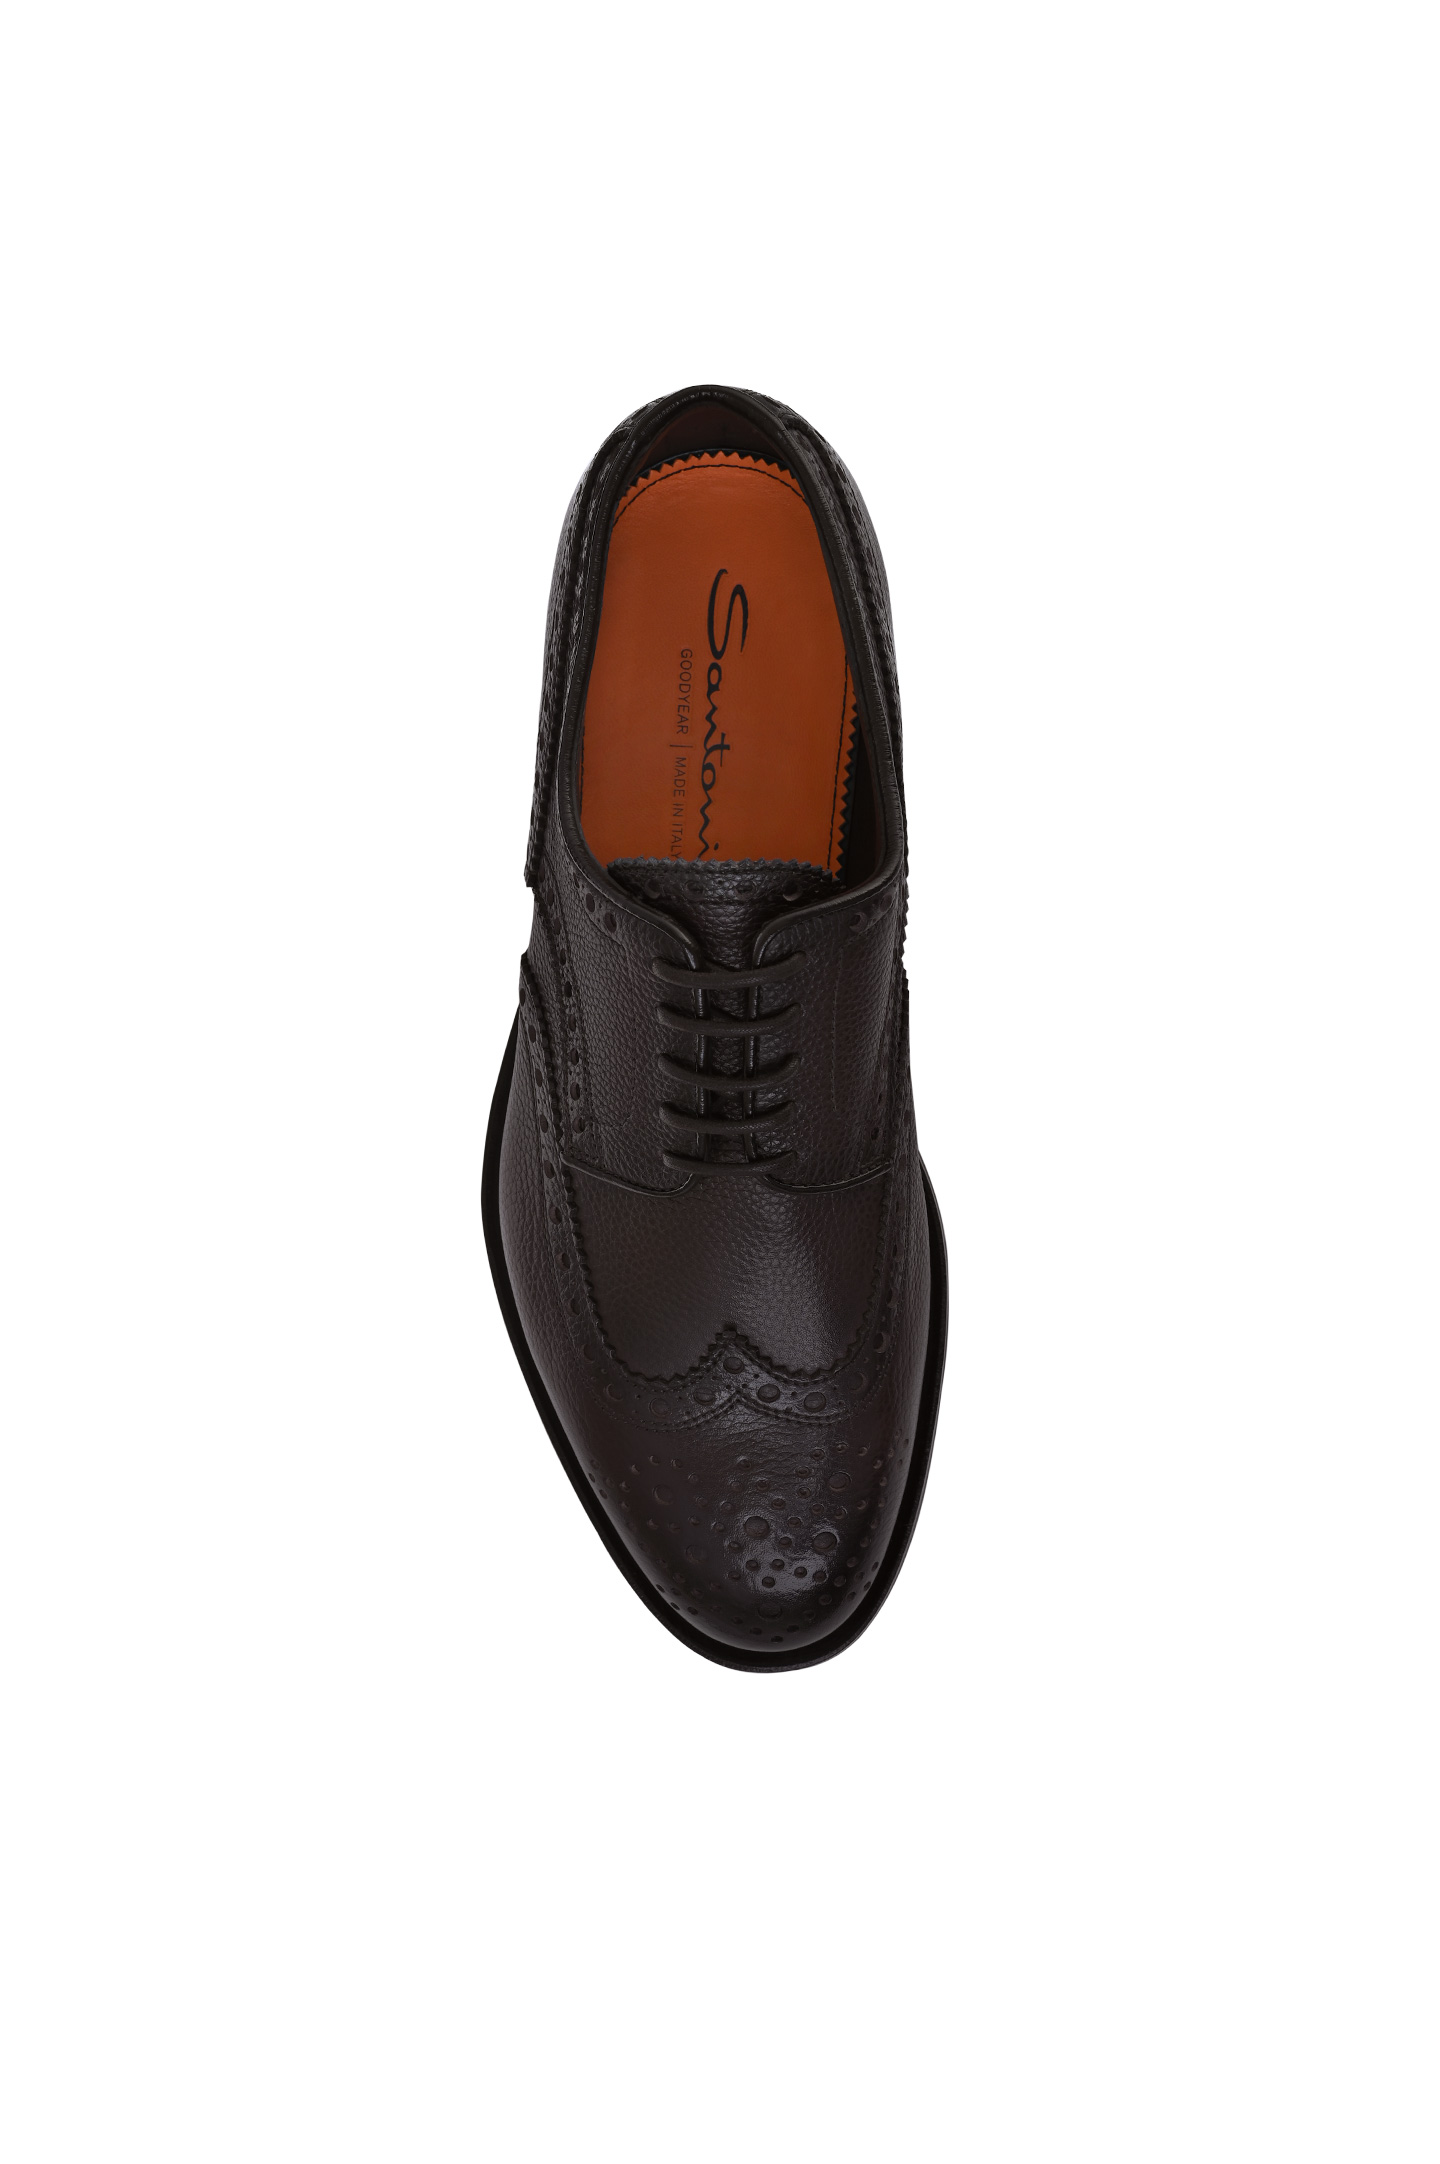 Туфли SANTONI MCCG15761PI2HSDSB44, цвет: Темно-коричневый, Мужской